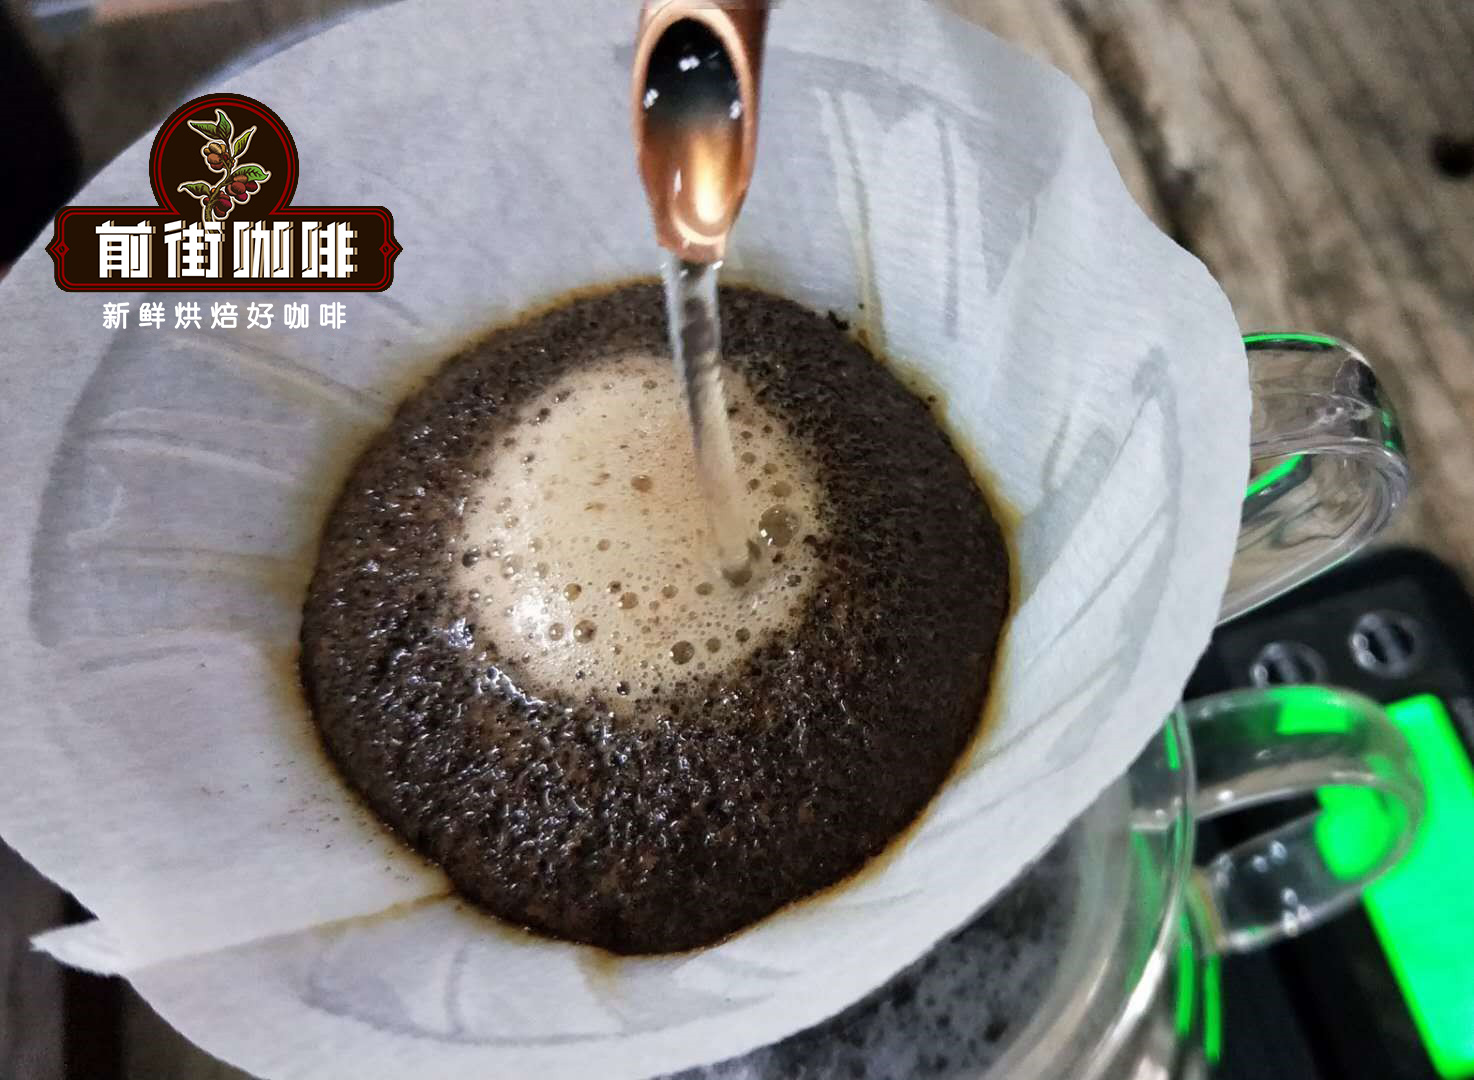 中度研磨和深度研磨的區別 咖啡粉的研磨粗細和風味有區別嗎